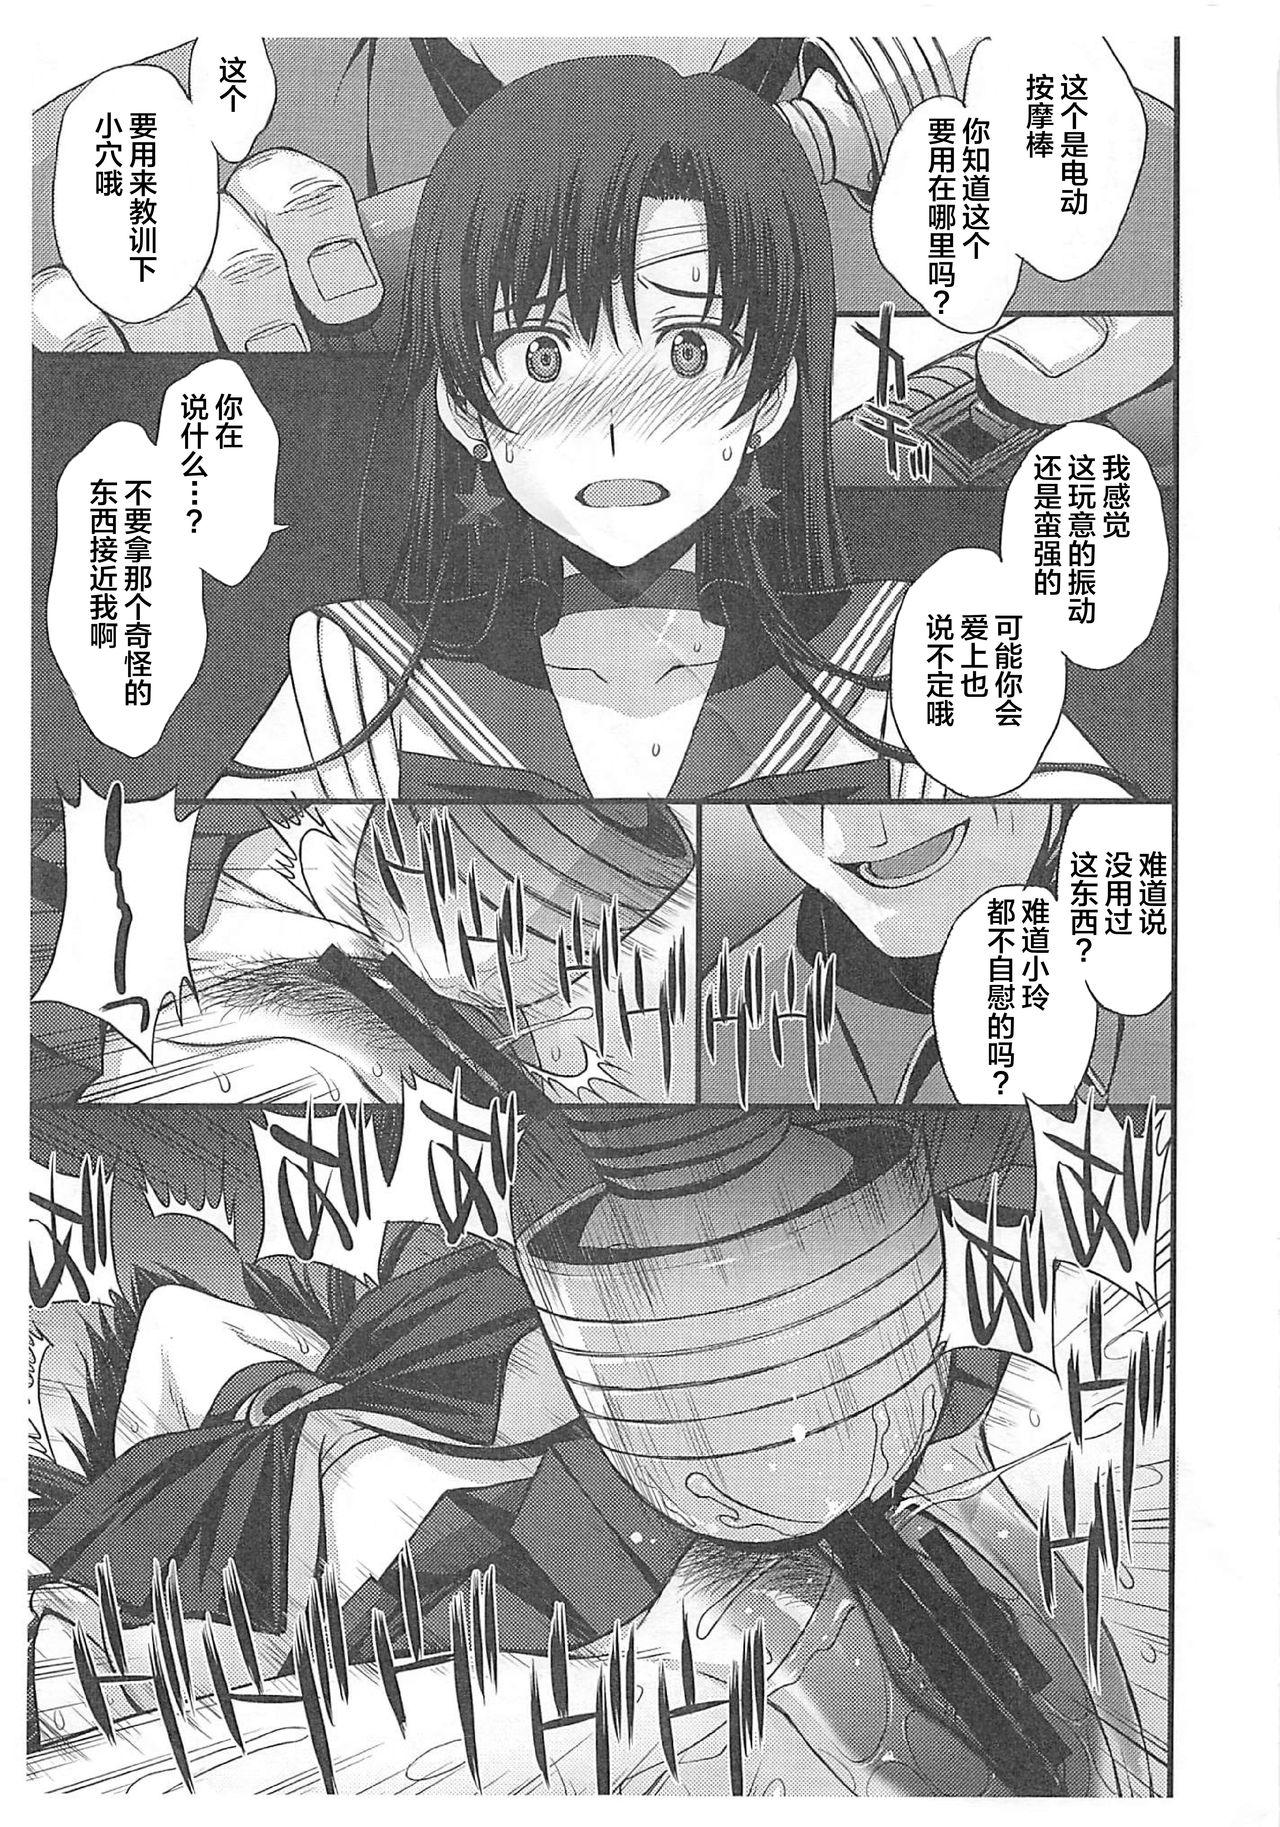 Transexual Natsu no maazu toppatsu kopii-shi - Sailor moon | bishoujo senshi sailor moon Humiliation - Page 2